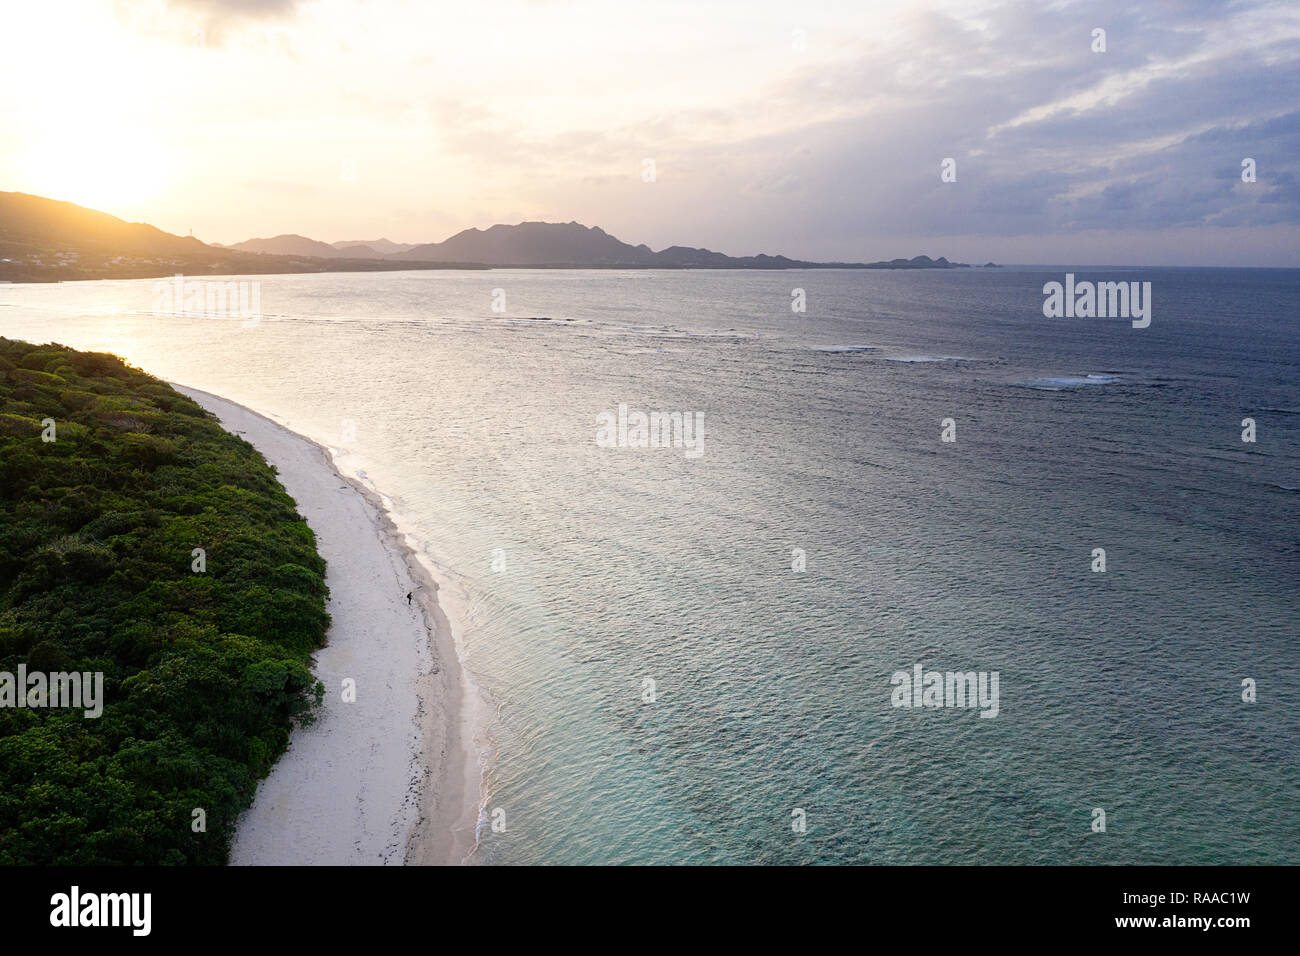 Vue aérienne sur l'île tropicale unique avec des montagnes, des plages de sable blanc et de récifs coralliens, au coucher du soleil, prise par drone, Ishigaki, Japon Banque D'Images